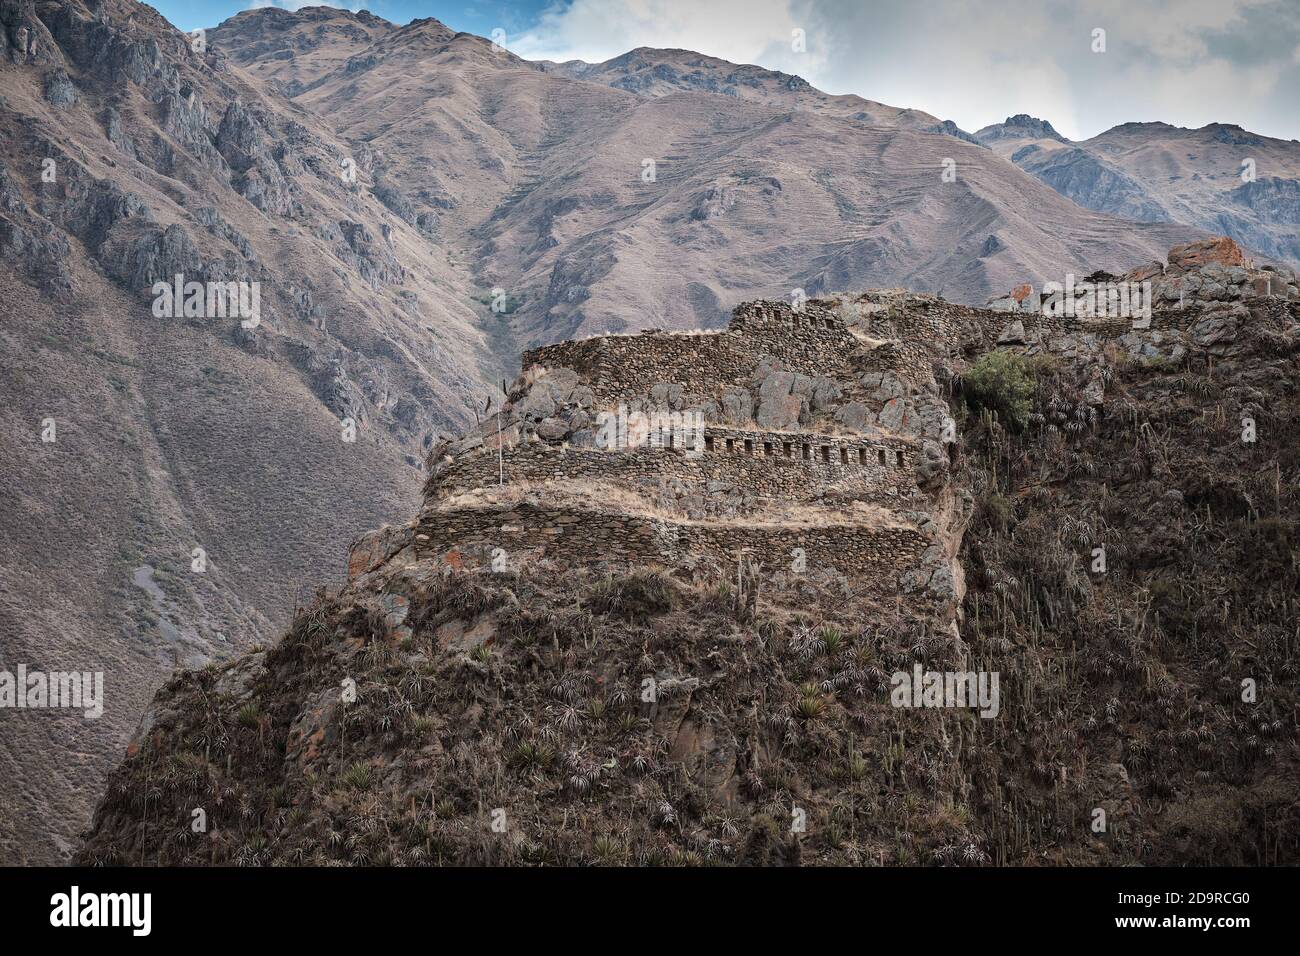 The Incan ruins at Ollantaytambo, Peru Stock Photo